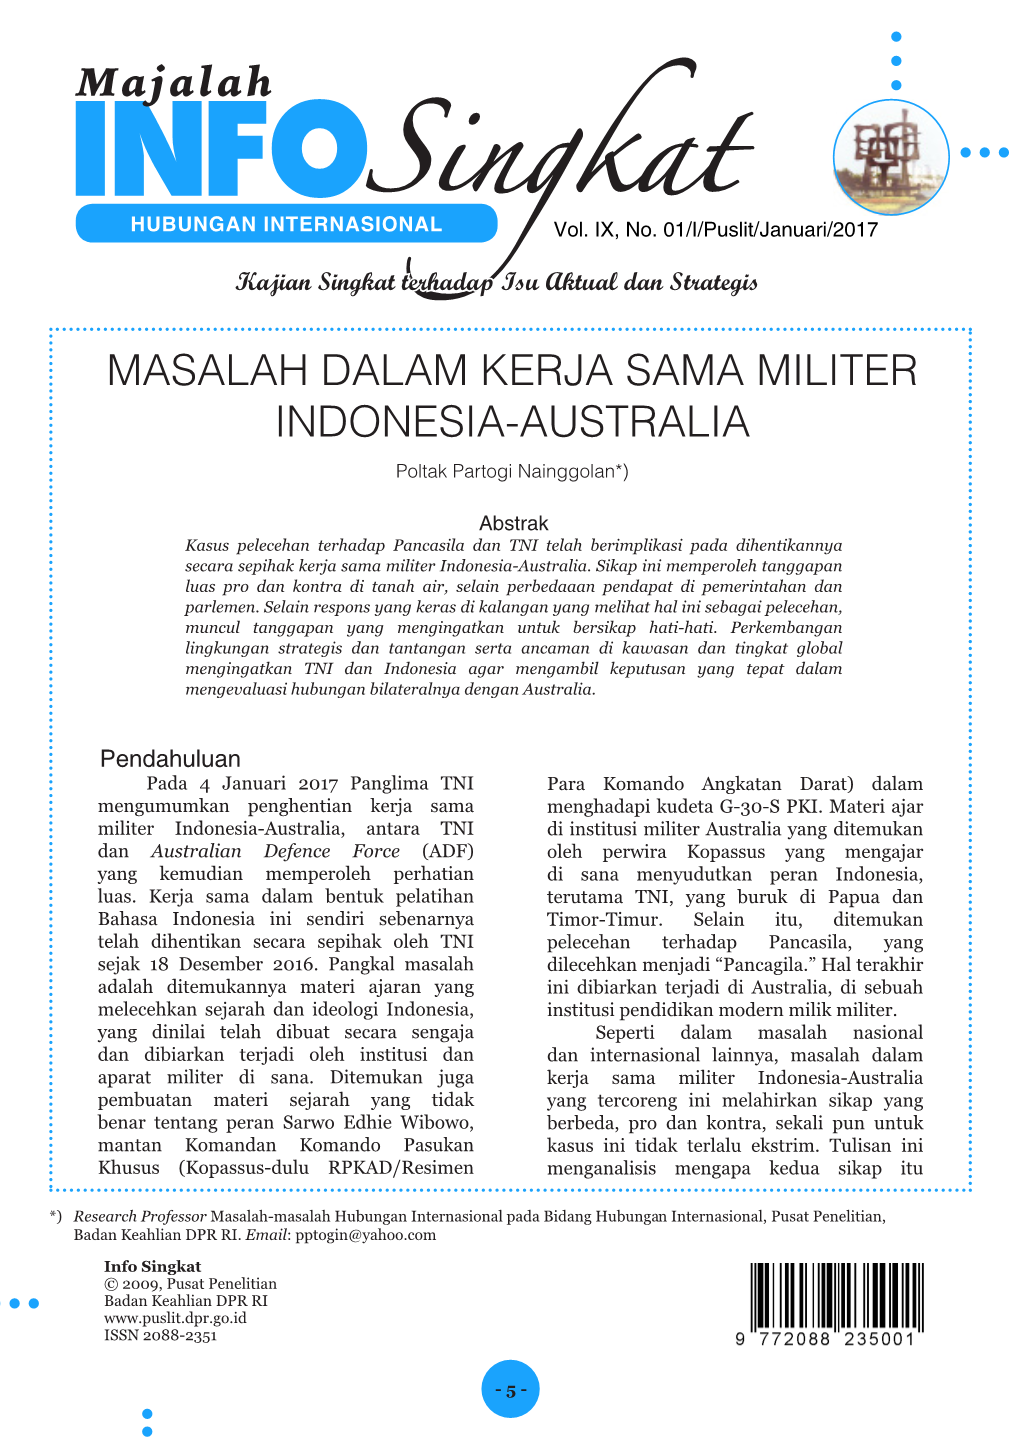 MASALAH DALAM KERJA SAMA MILITER INDONESIA-AUSTRALIA Poltak Partogi Nainggolan*)